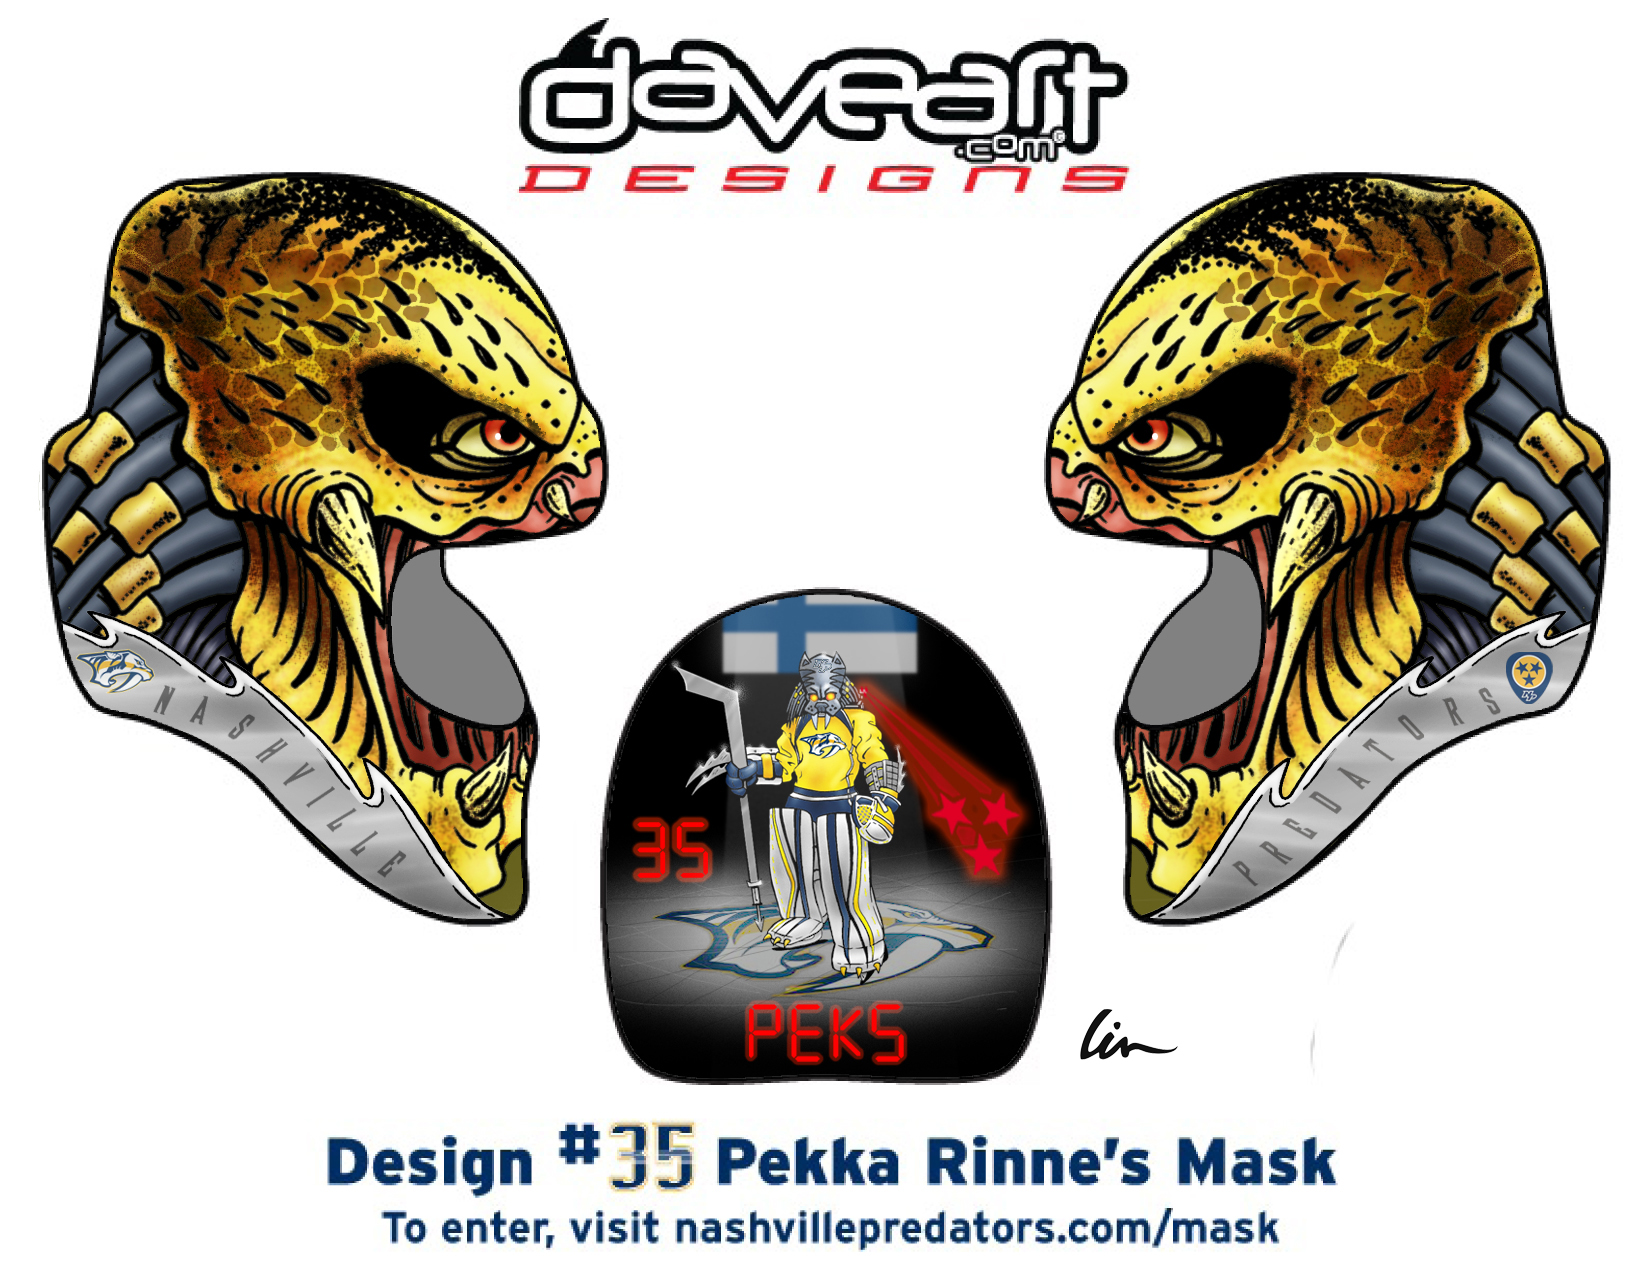 VIDEO: Pekka Rinne to wear mask designed by fan 